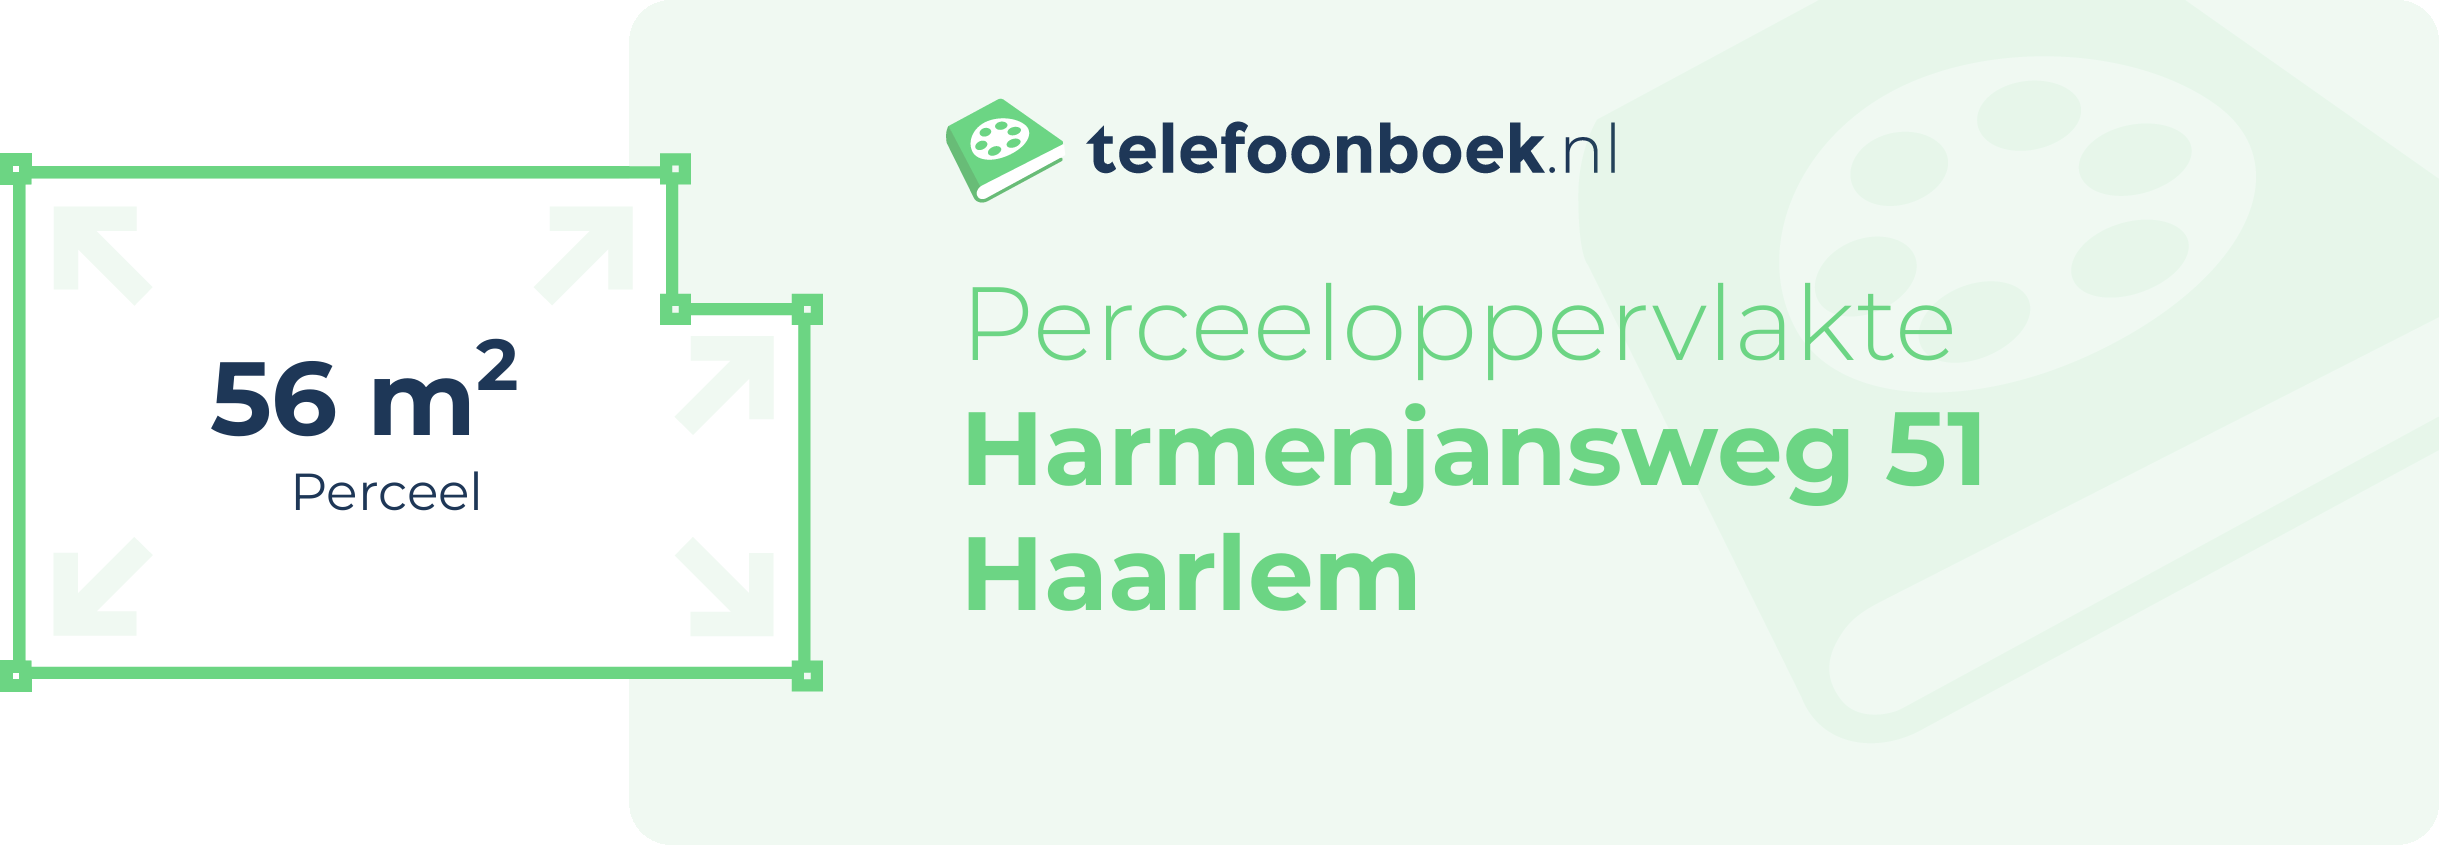 Perceeloppervlakte Harmenjansweg 51 Haarlem